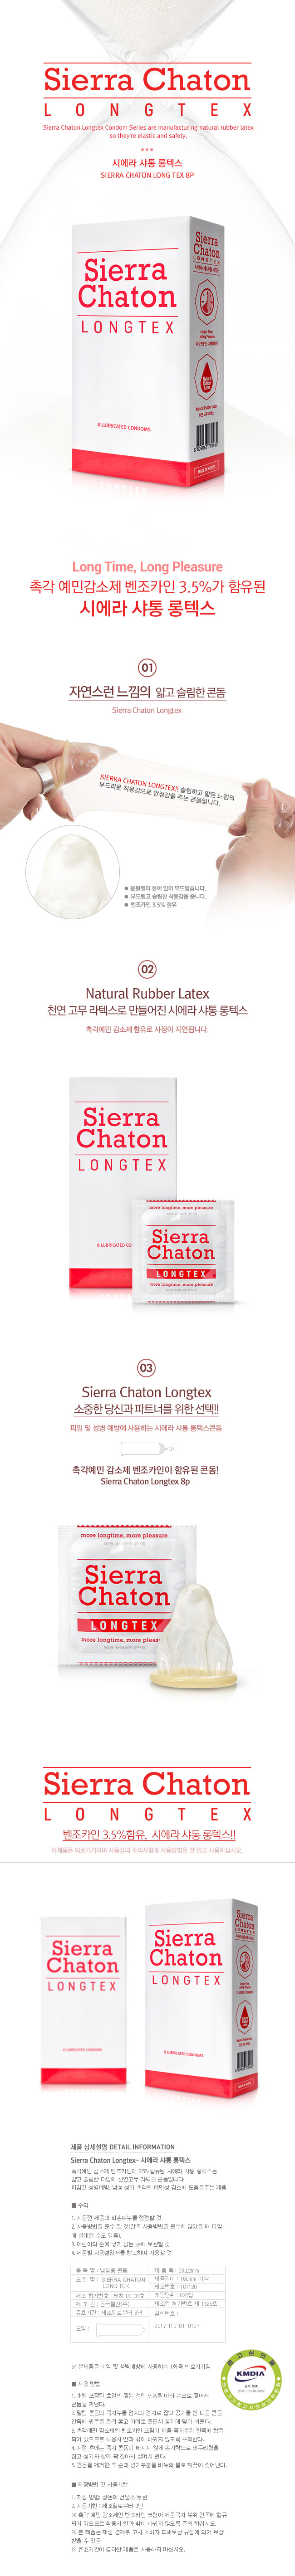 [사정지연] 시에라샤통 롱텍스 콘돔 8P(Sierra Chaton Longtex 8p)